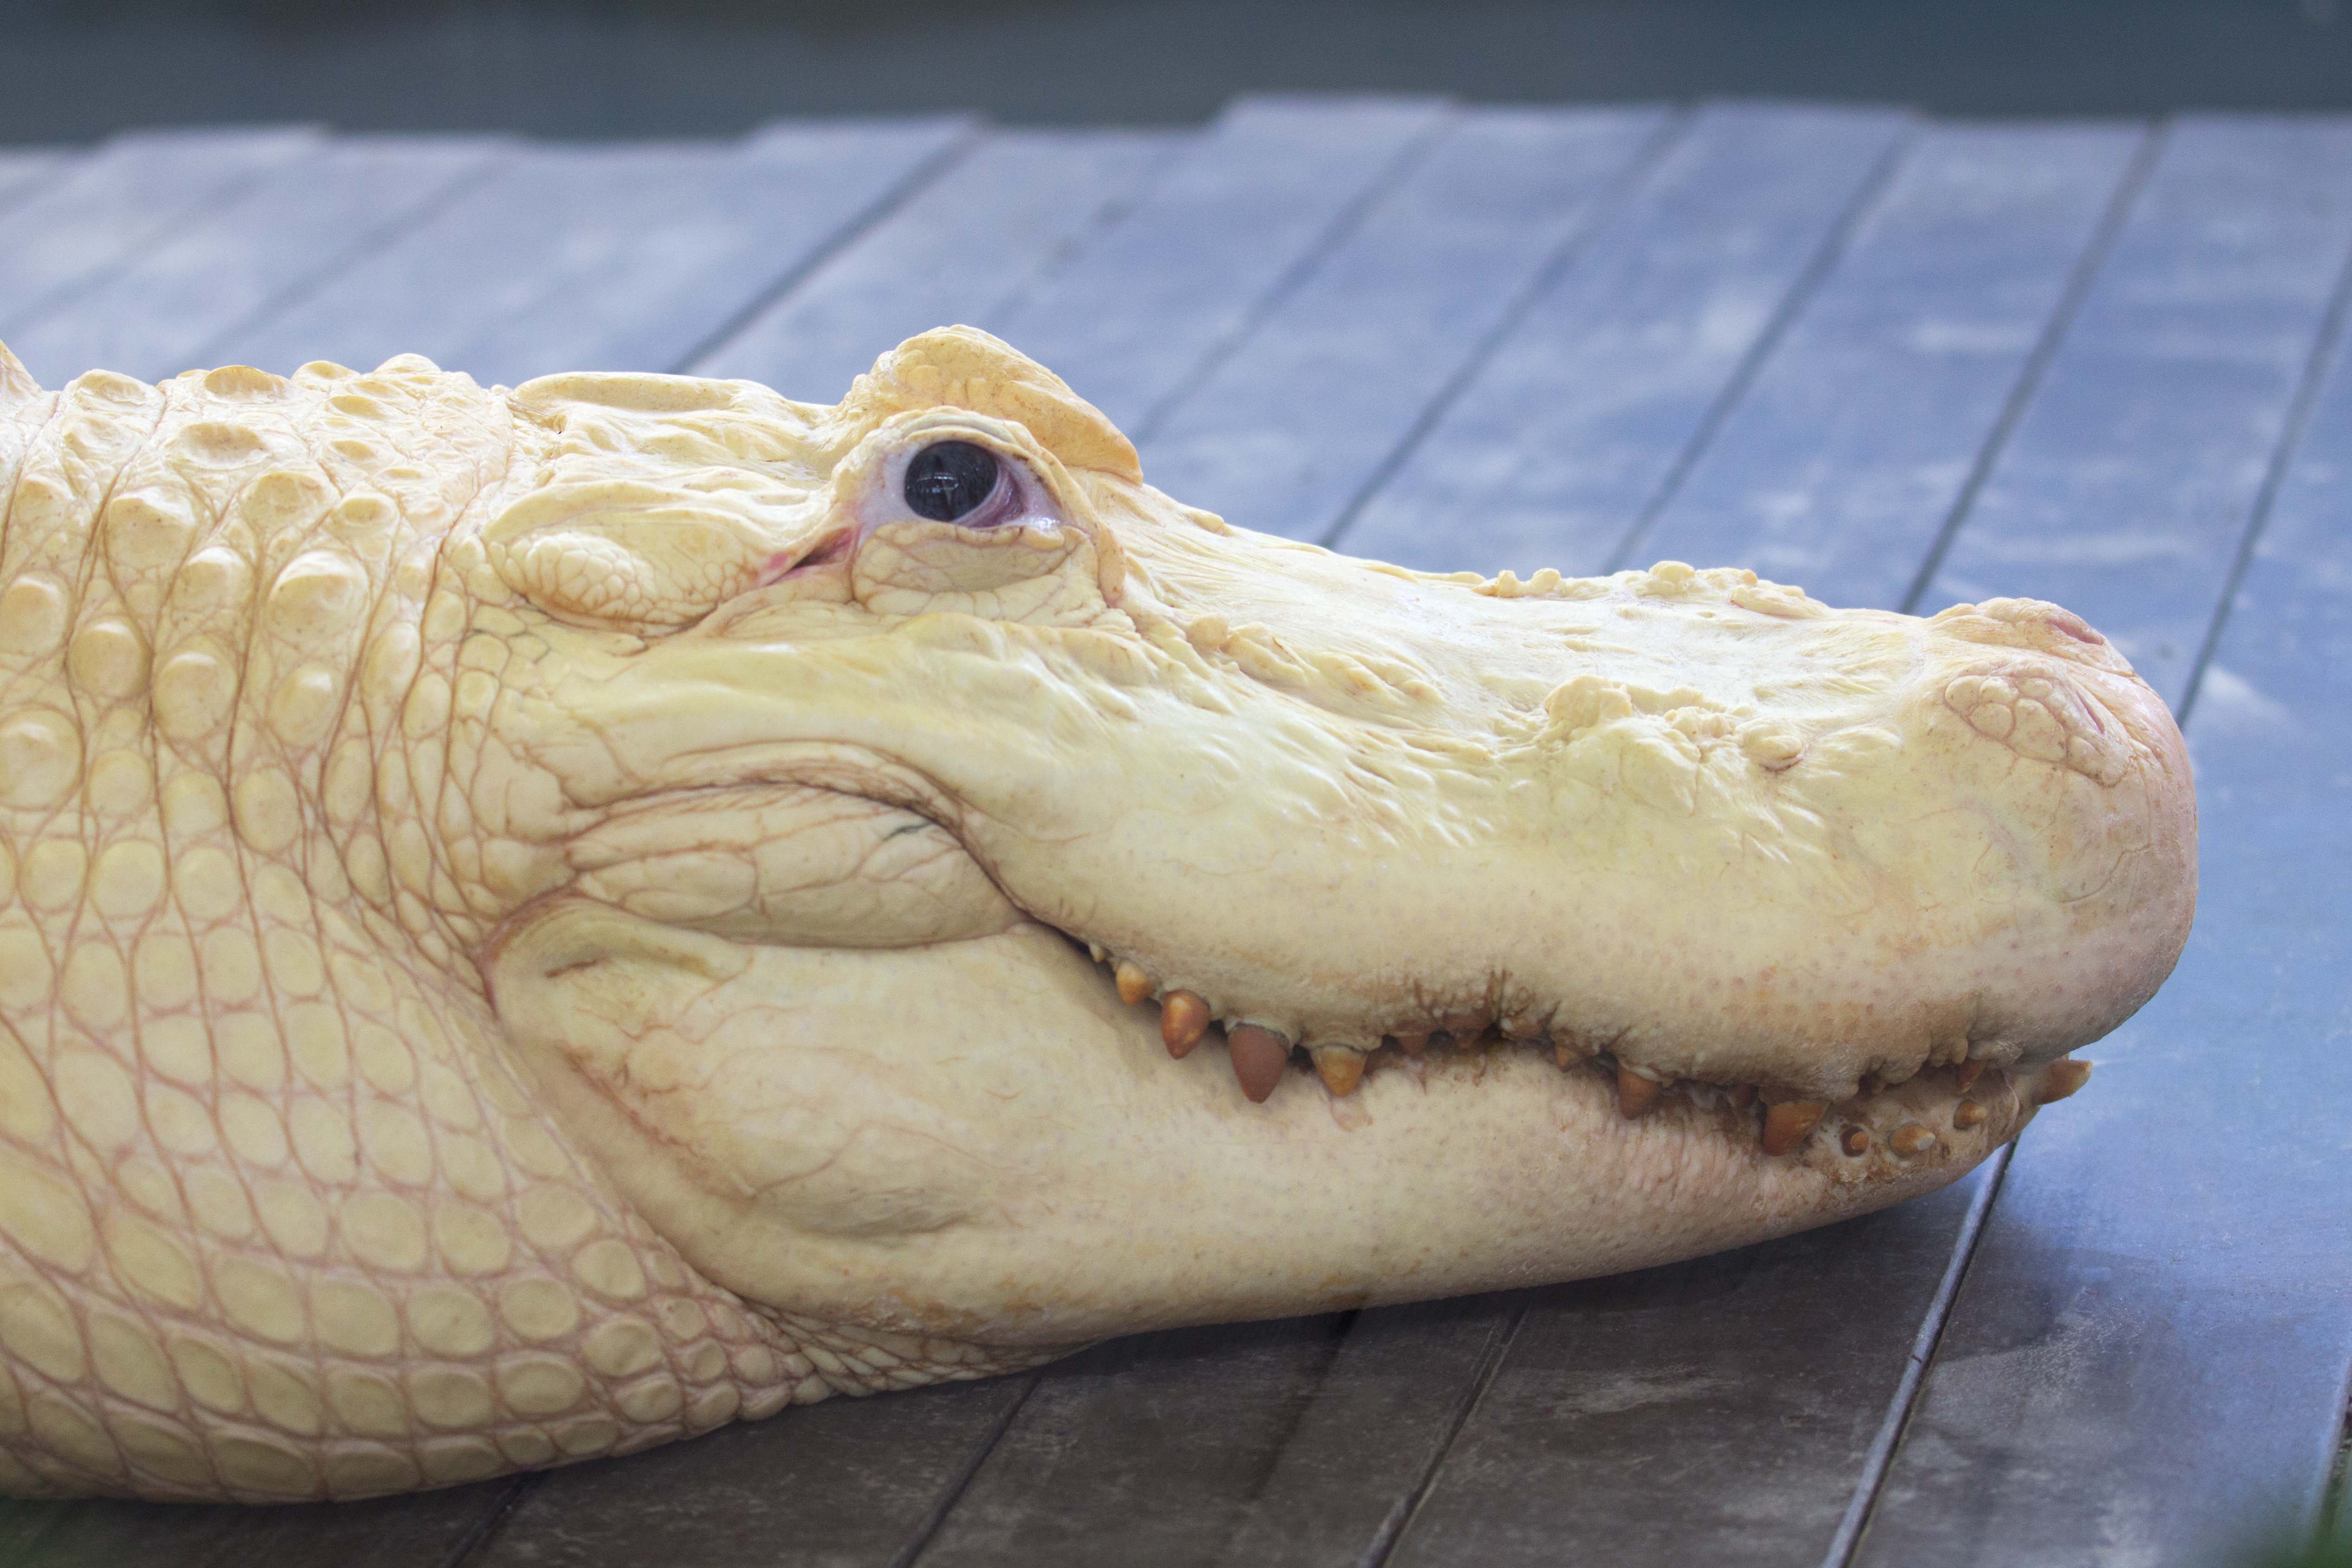 Smiling alligators photo